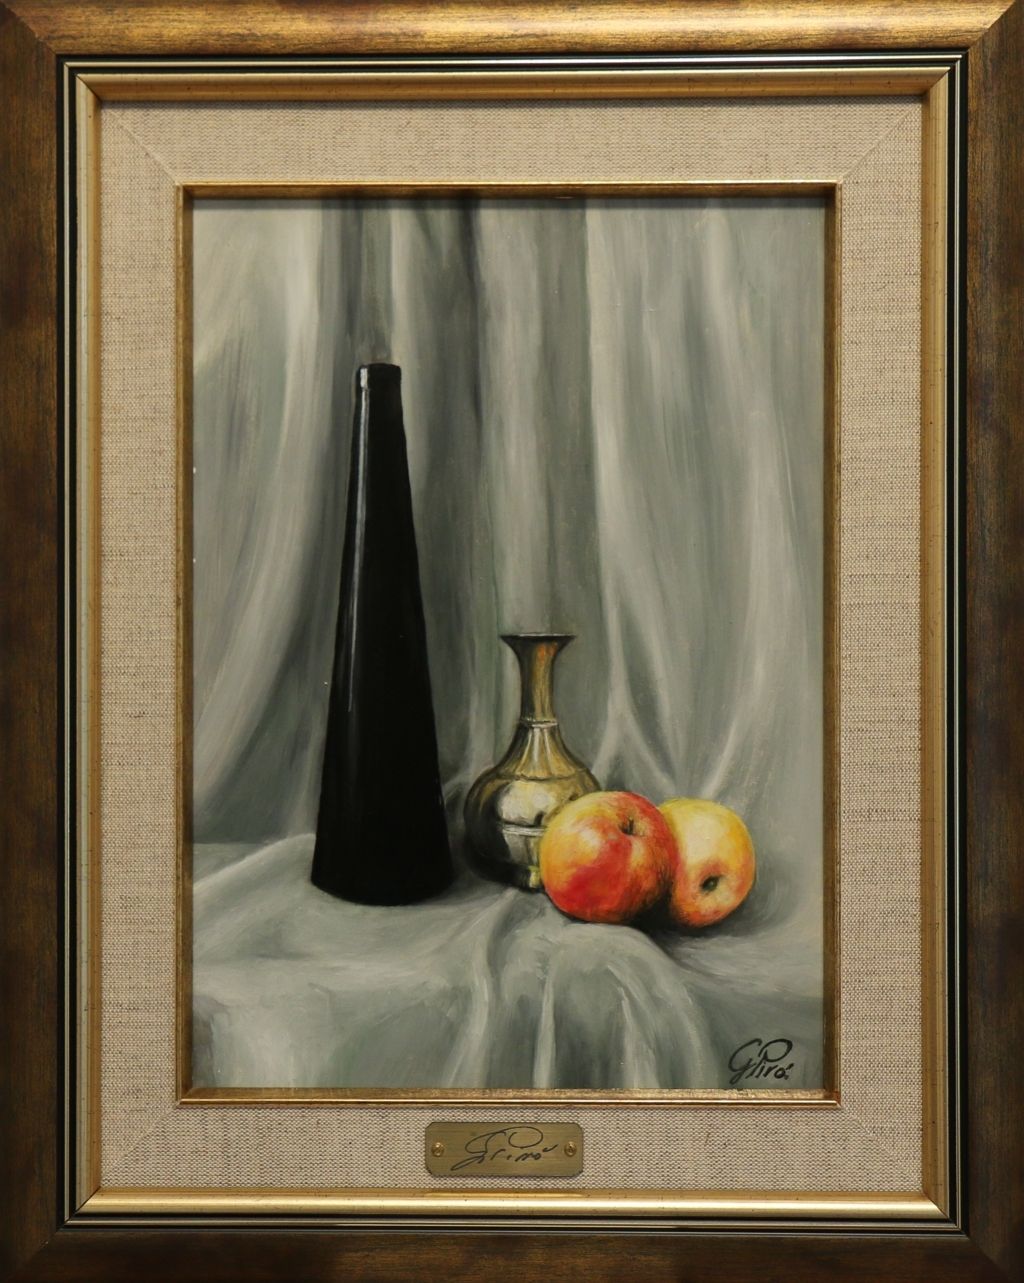 Gemälde, Glas, Äpfel, und Messing, Gregory Pyra Piro